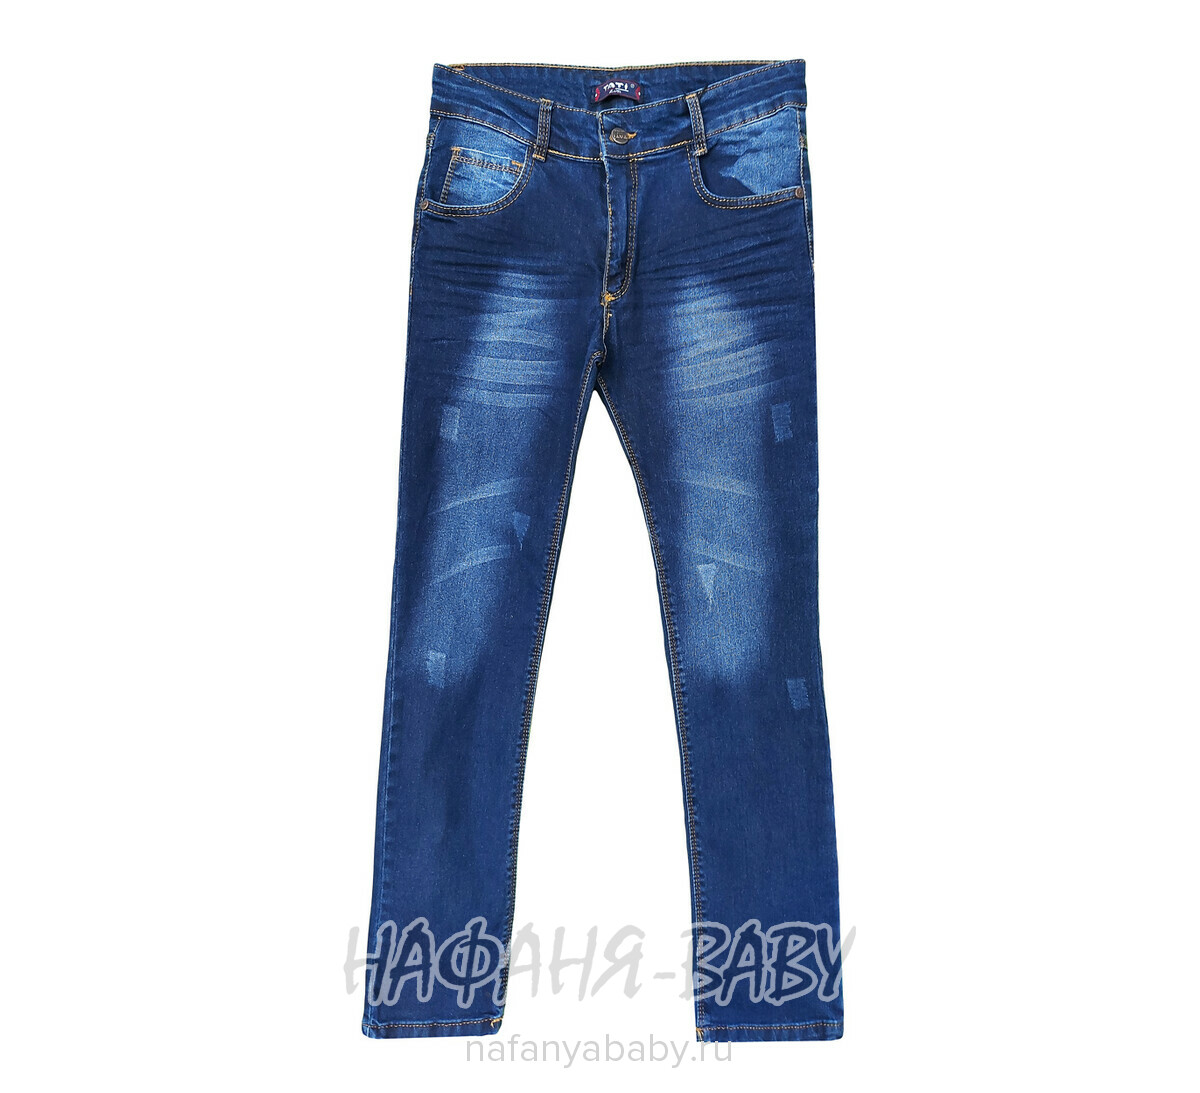 Подростковые джинсы TATI Jeans арт: 6214, 10-15 лет, оптом Турция